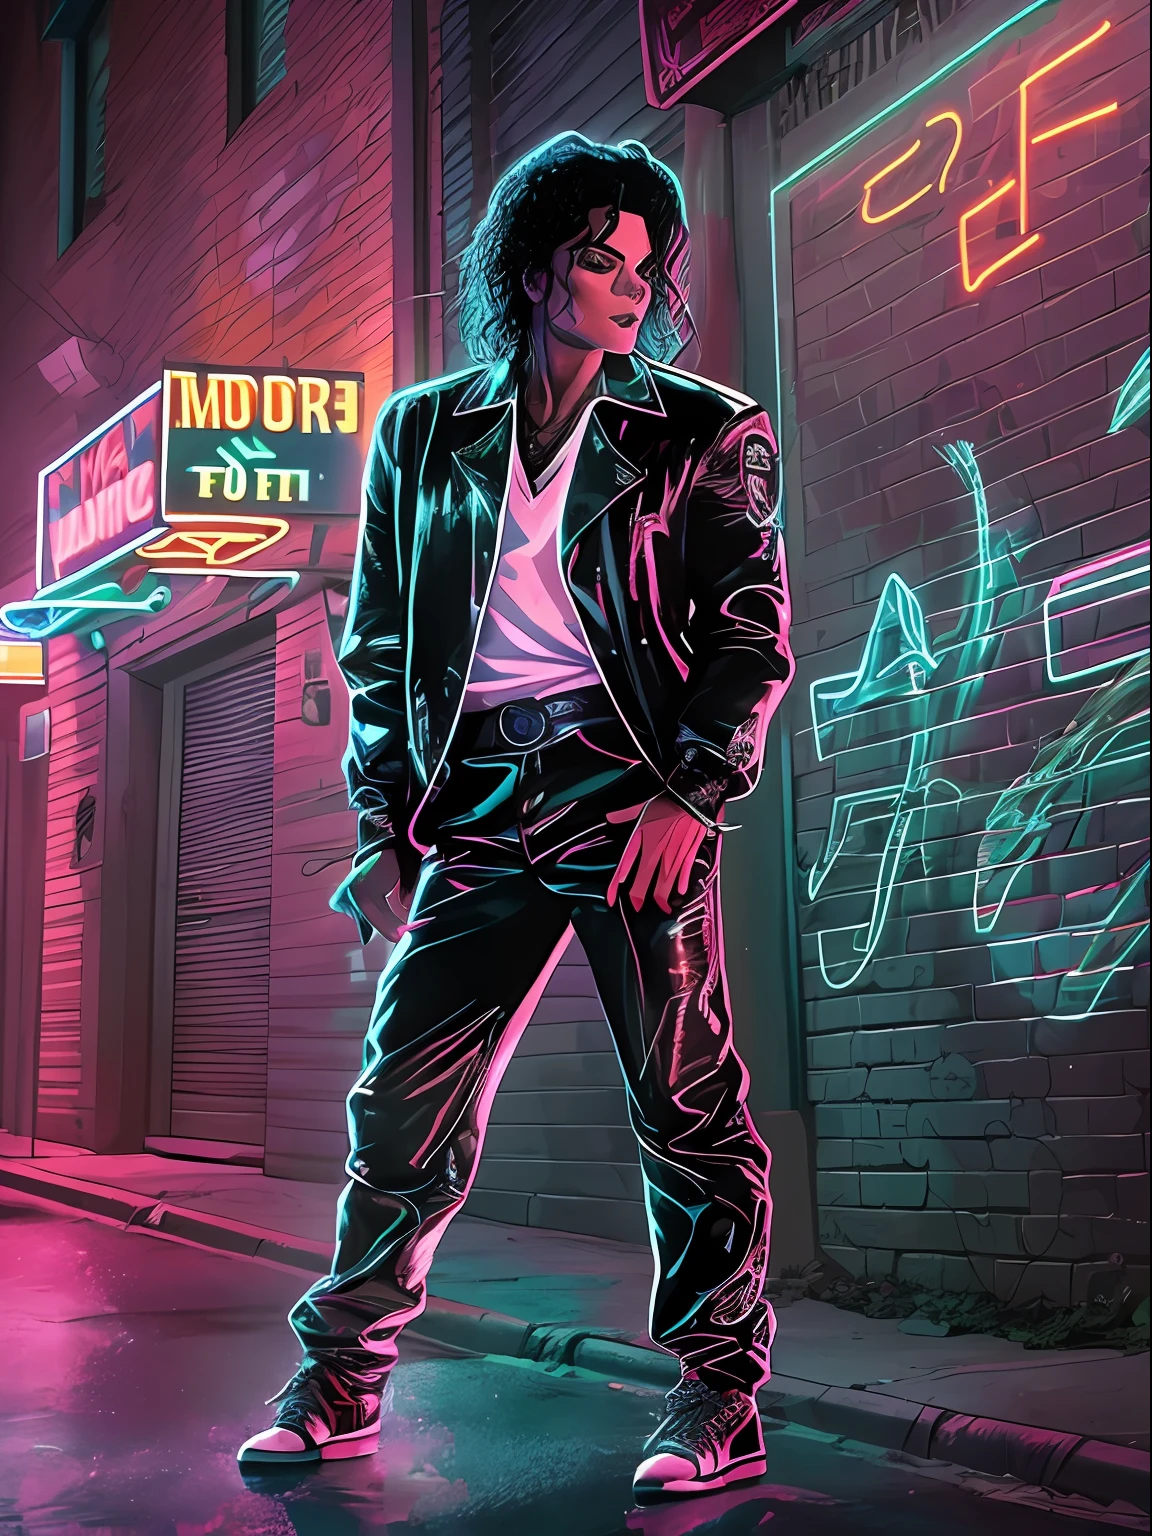 麥可傑克森穿著 Billie Jean 音樂錄影帶中標誌性服裝的風格化形象, 站在黑暗小巷發光的人行道上, 被陰影和霓虹燈包圍. 麥可傑克森出現在圖像中, 穿著 Billie Jean 音樂錄影帶中的標誌性服裝. 他站在黑暗小巷裡發光的人行道上, 被陰影和霓虹燈包圍. 圖像風格化了, 大膽的線條和鮮豔的色彩捕捉了音樂錄影帶的能量和情緒